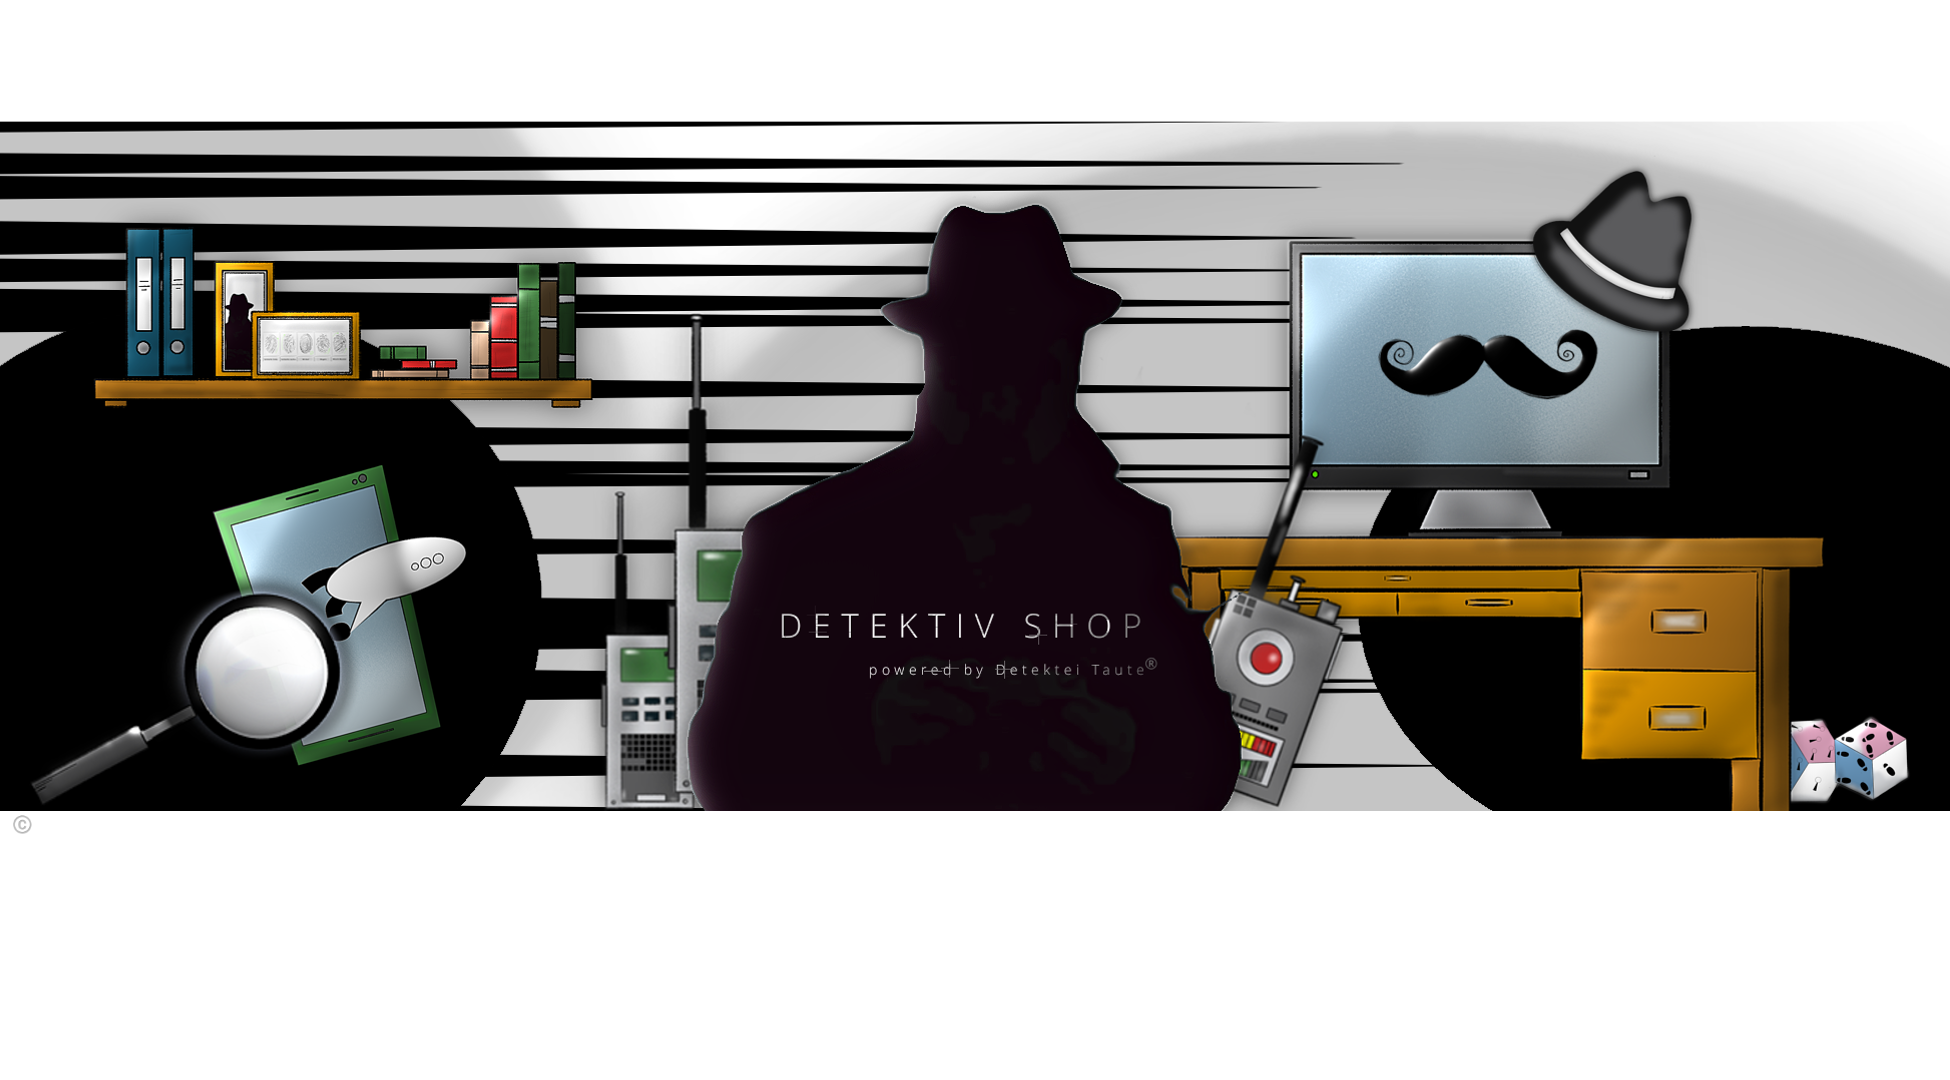 Detektiv Shop - Detektiv Deko und Zubehör - Detektiv Ideen - Vorlagen - Basteln - Detektei Taute - ®DanaZönnchen